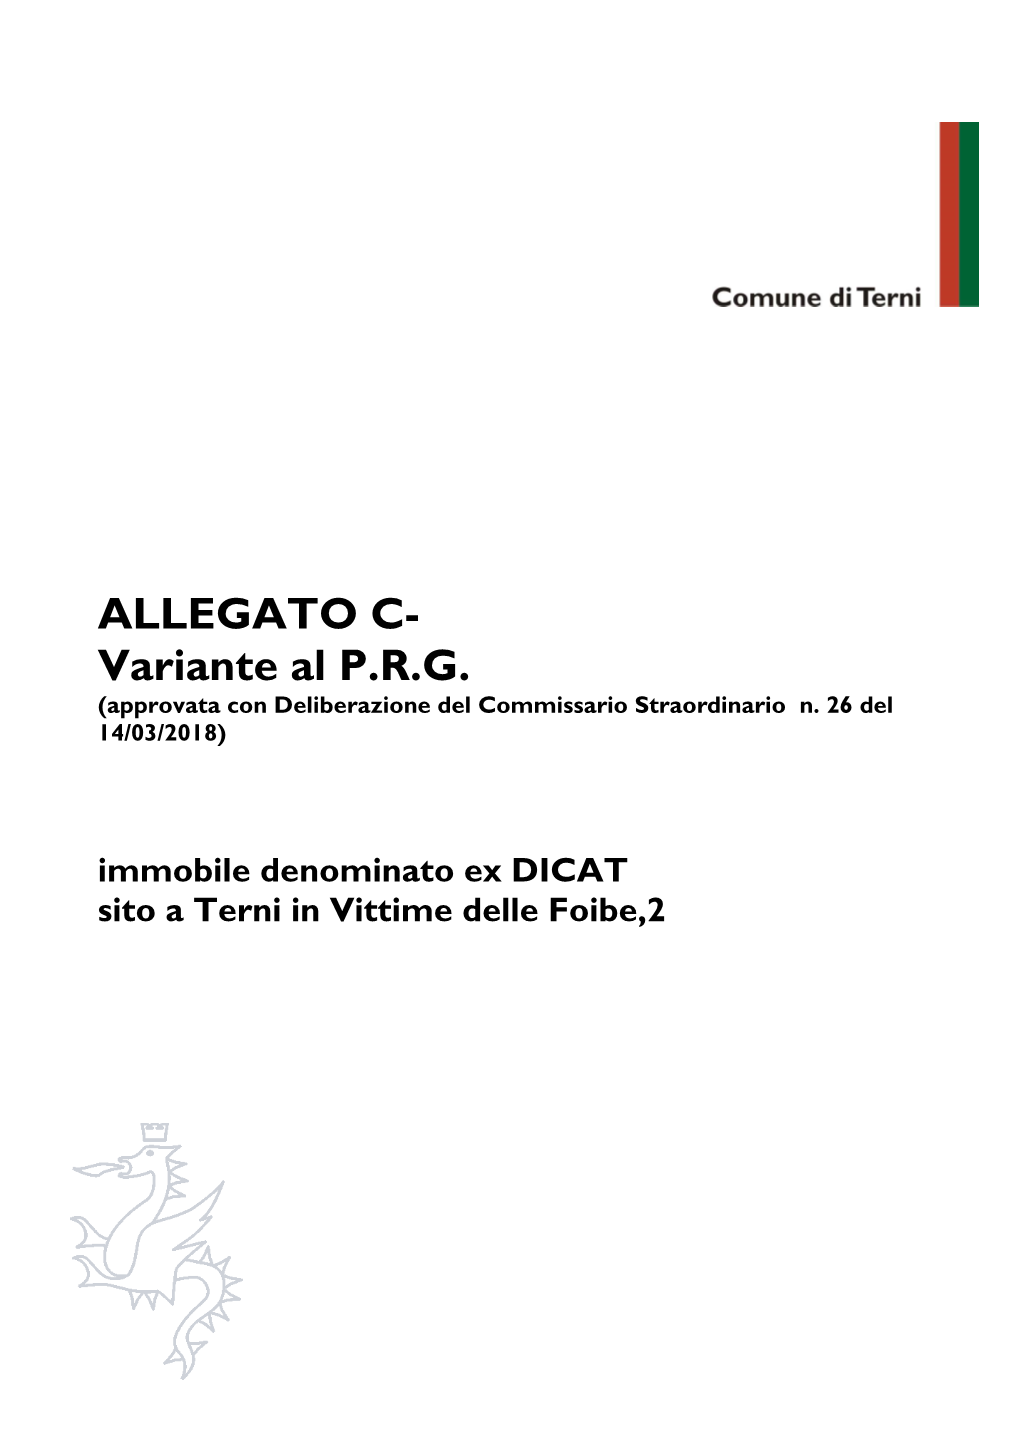 ALLEGATO C- Variante Al P.R.G. (Approvata Con Deliberazione Del Commissario Straordinario N